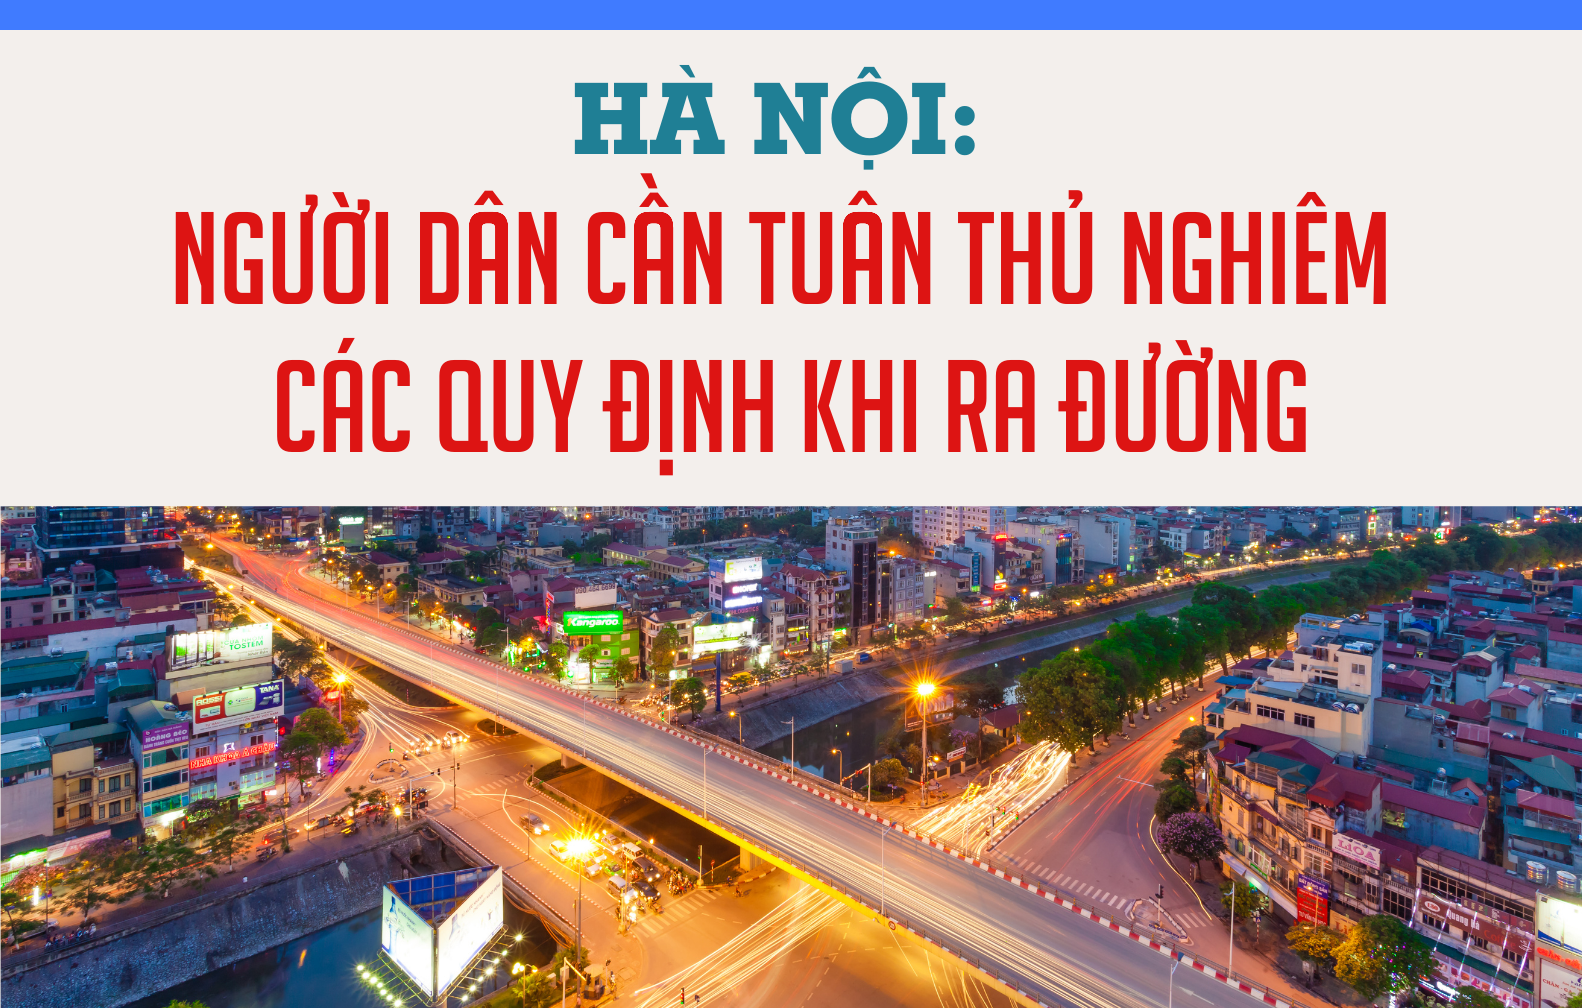 [Infographic] Hà Nội: Người dân cần tuân thủ nghiêm các quy định khi ra đường